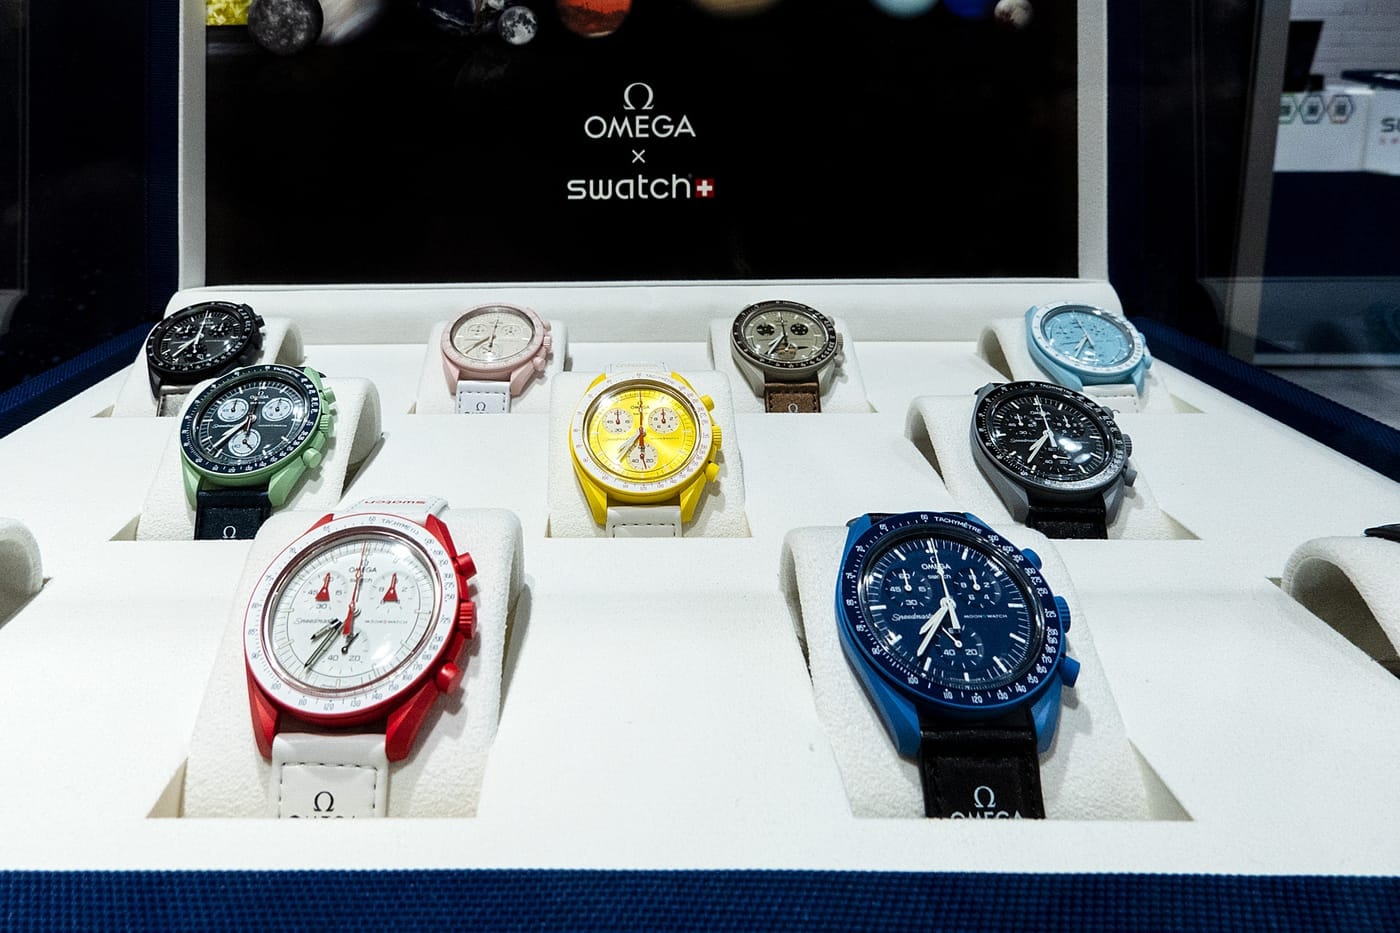 스와치 & 오메가, 새로운 ‘스피드마스터 문스와치’ 제품 출시한다, 시계, 손목시계